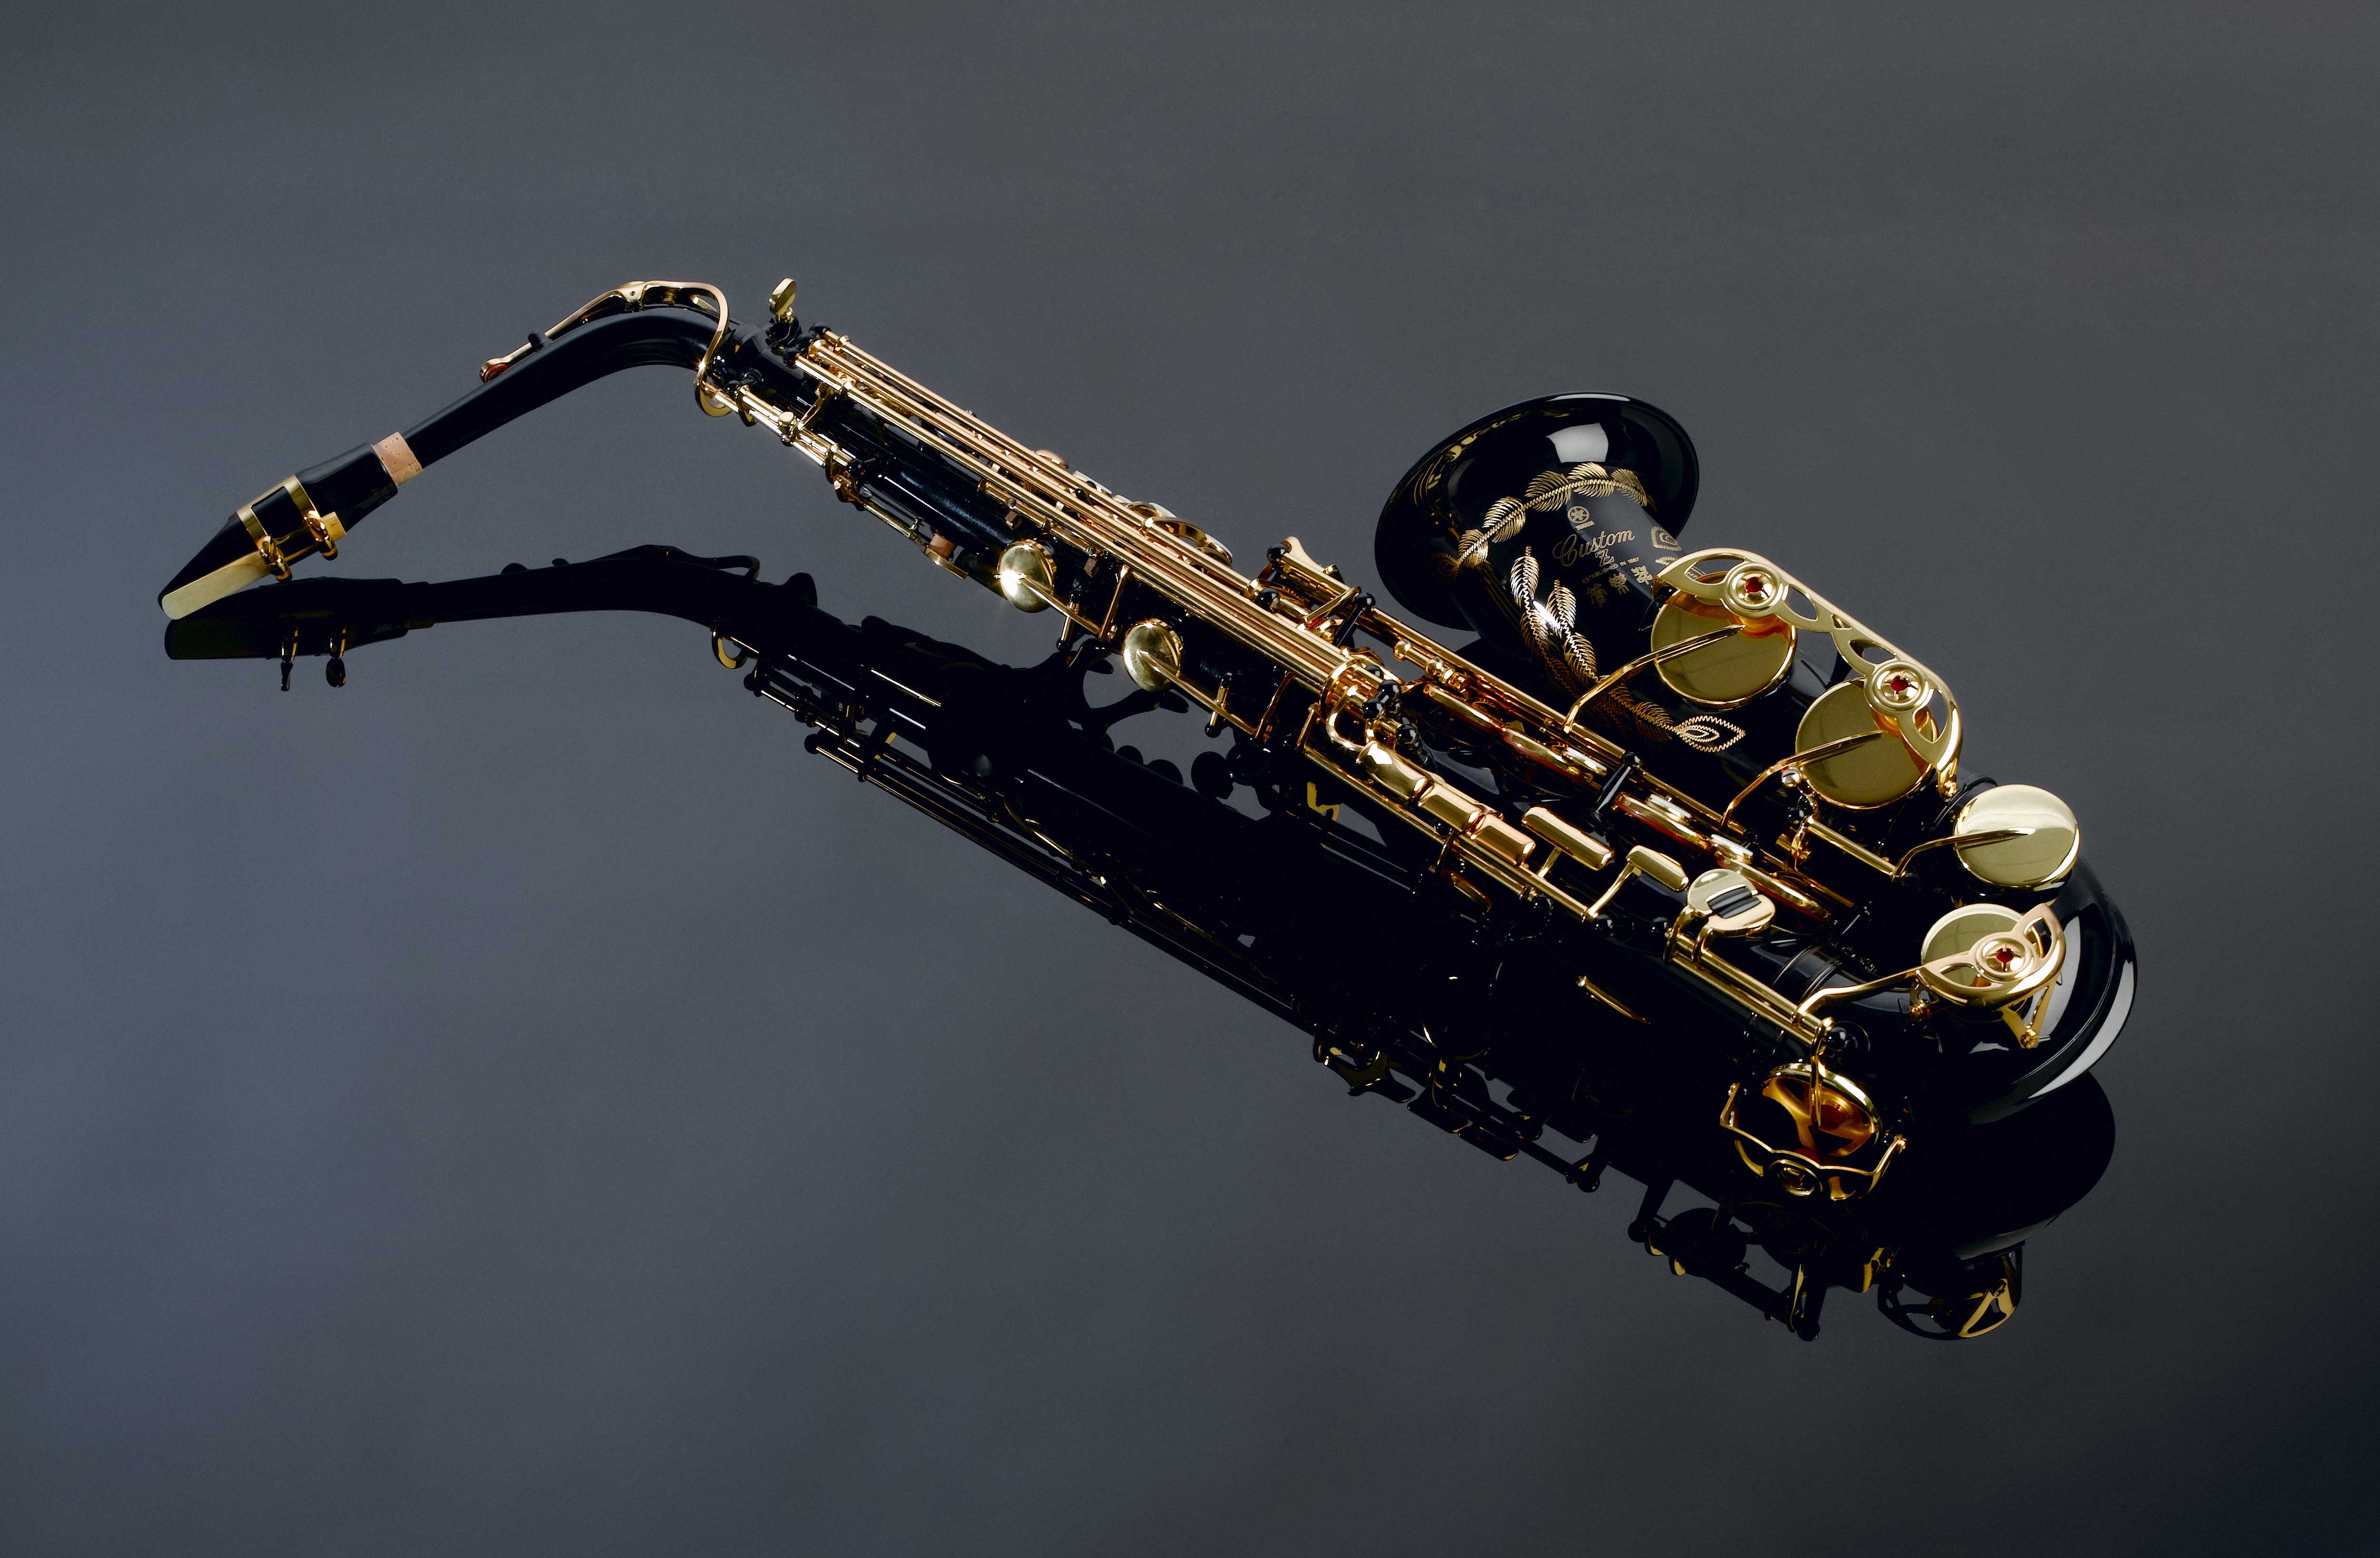 Saxophone jahaziel. Музыкальный инструмент Saksafon. Саксофон 1840. Саксофон Пикколо. Саксофон джаз.